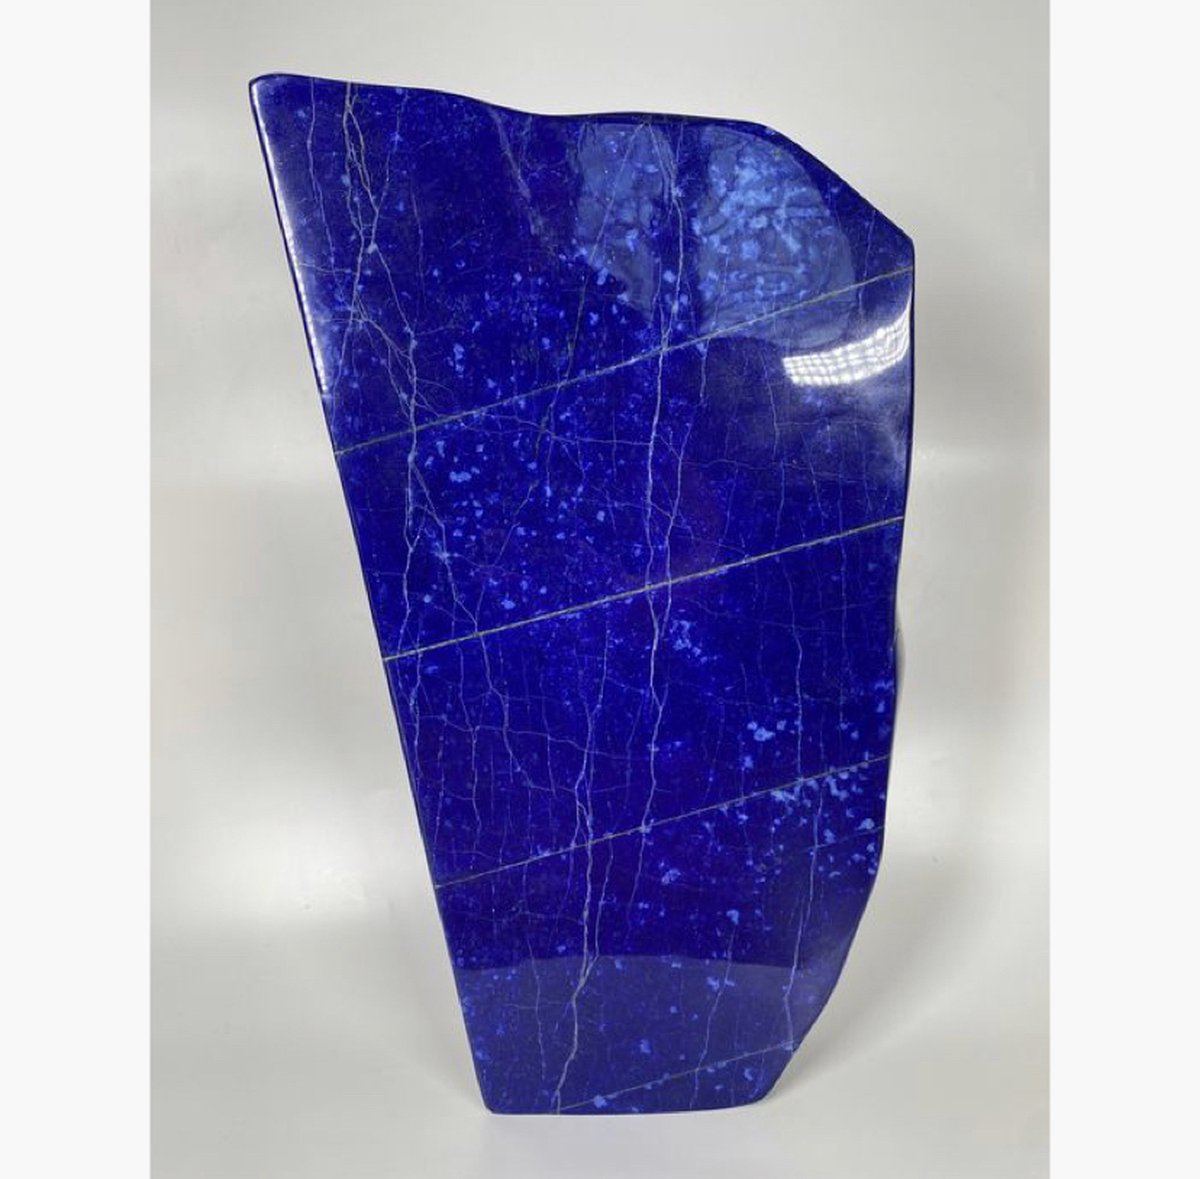 A+++ Lapis Lazuli Steen - 500 GR - Vrije Vorm - Zelfstaand - Blauw - Energy - Helend